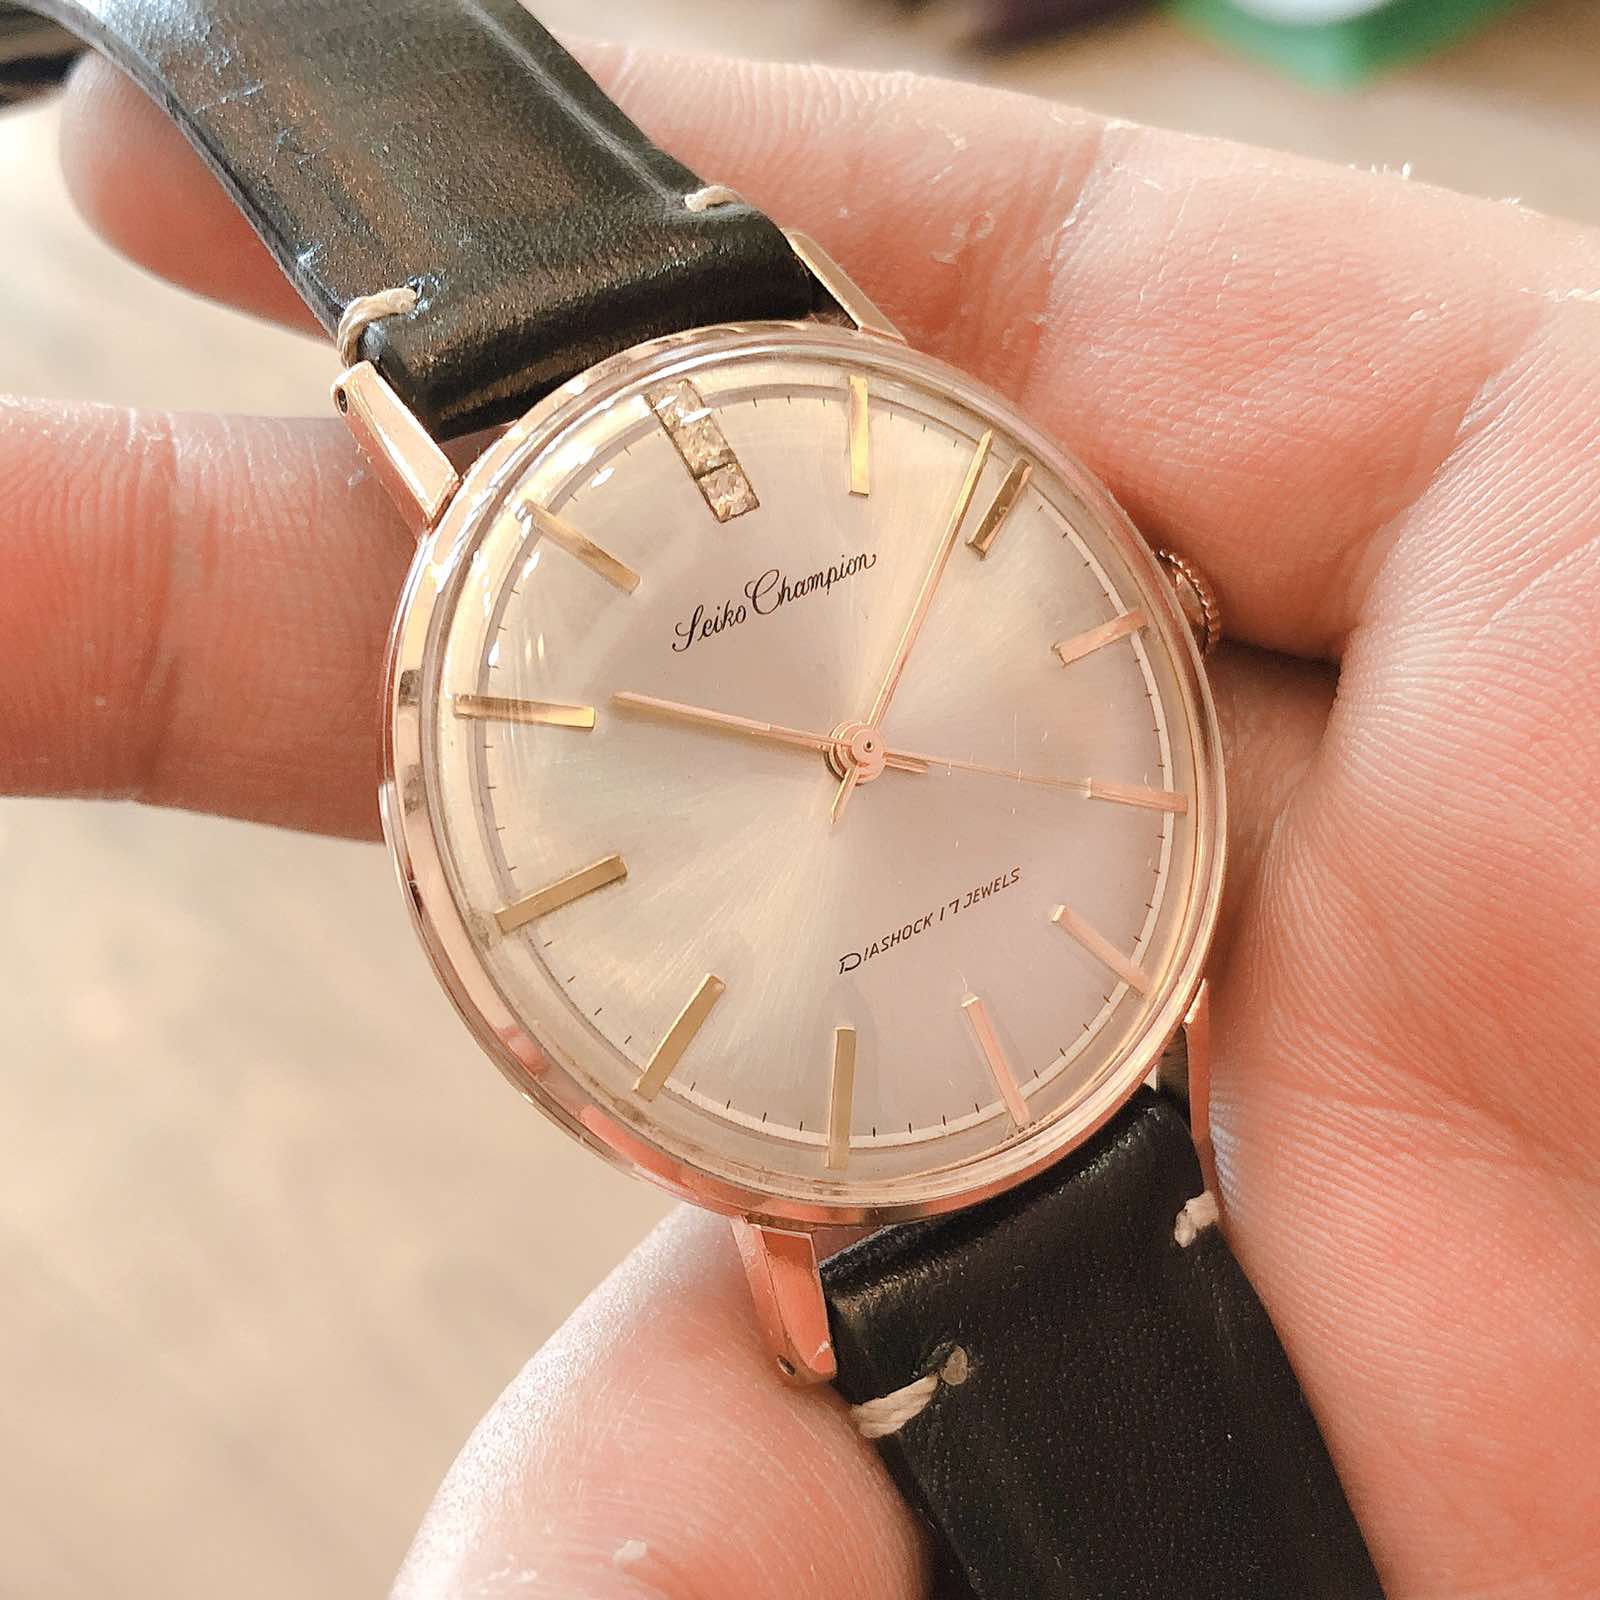 Đồng hồ cổ SEIKO Champions lên dây lacke vàng chính hãng nhật bản